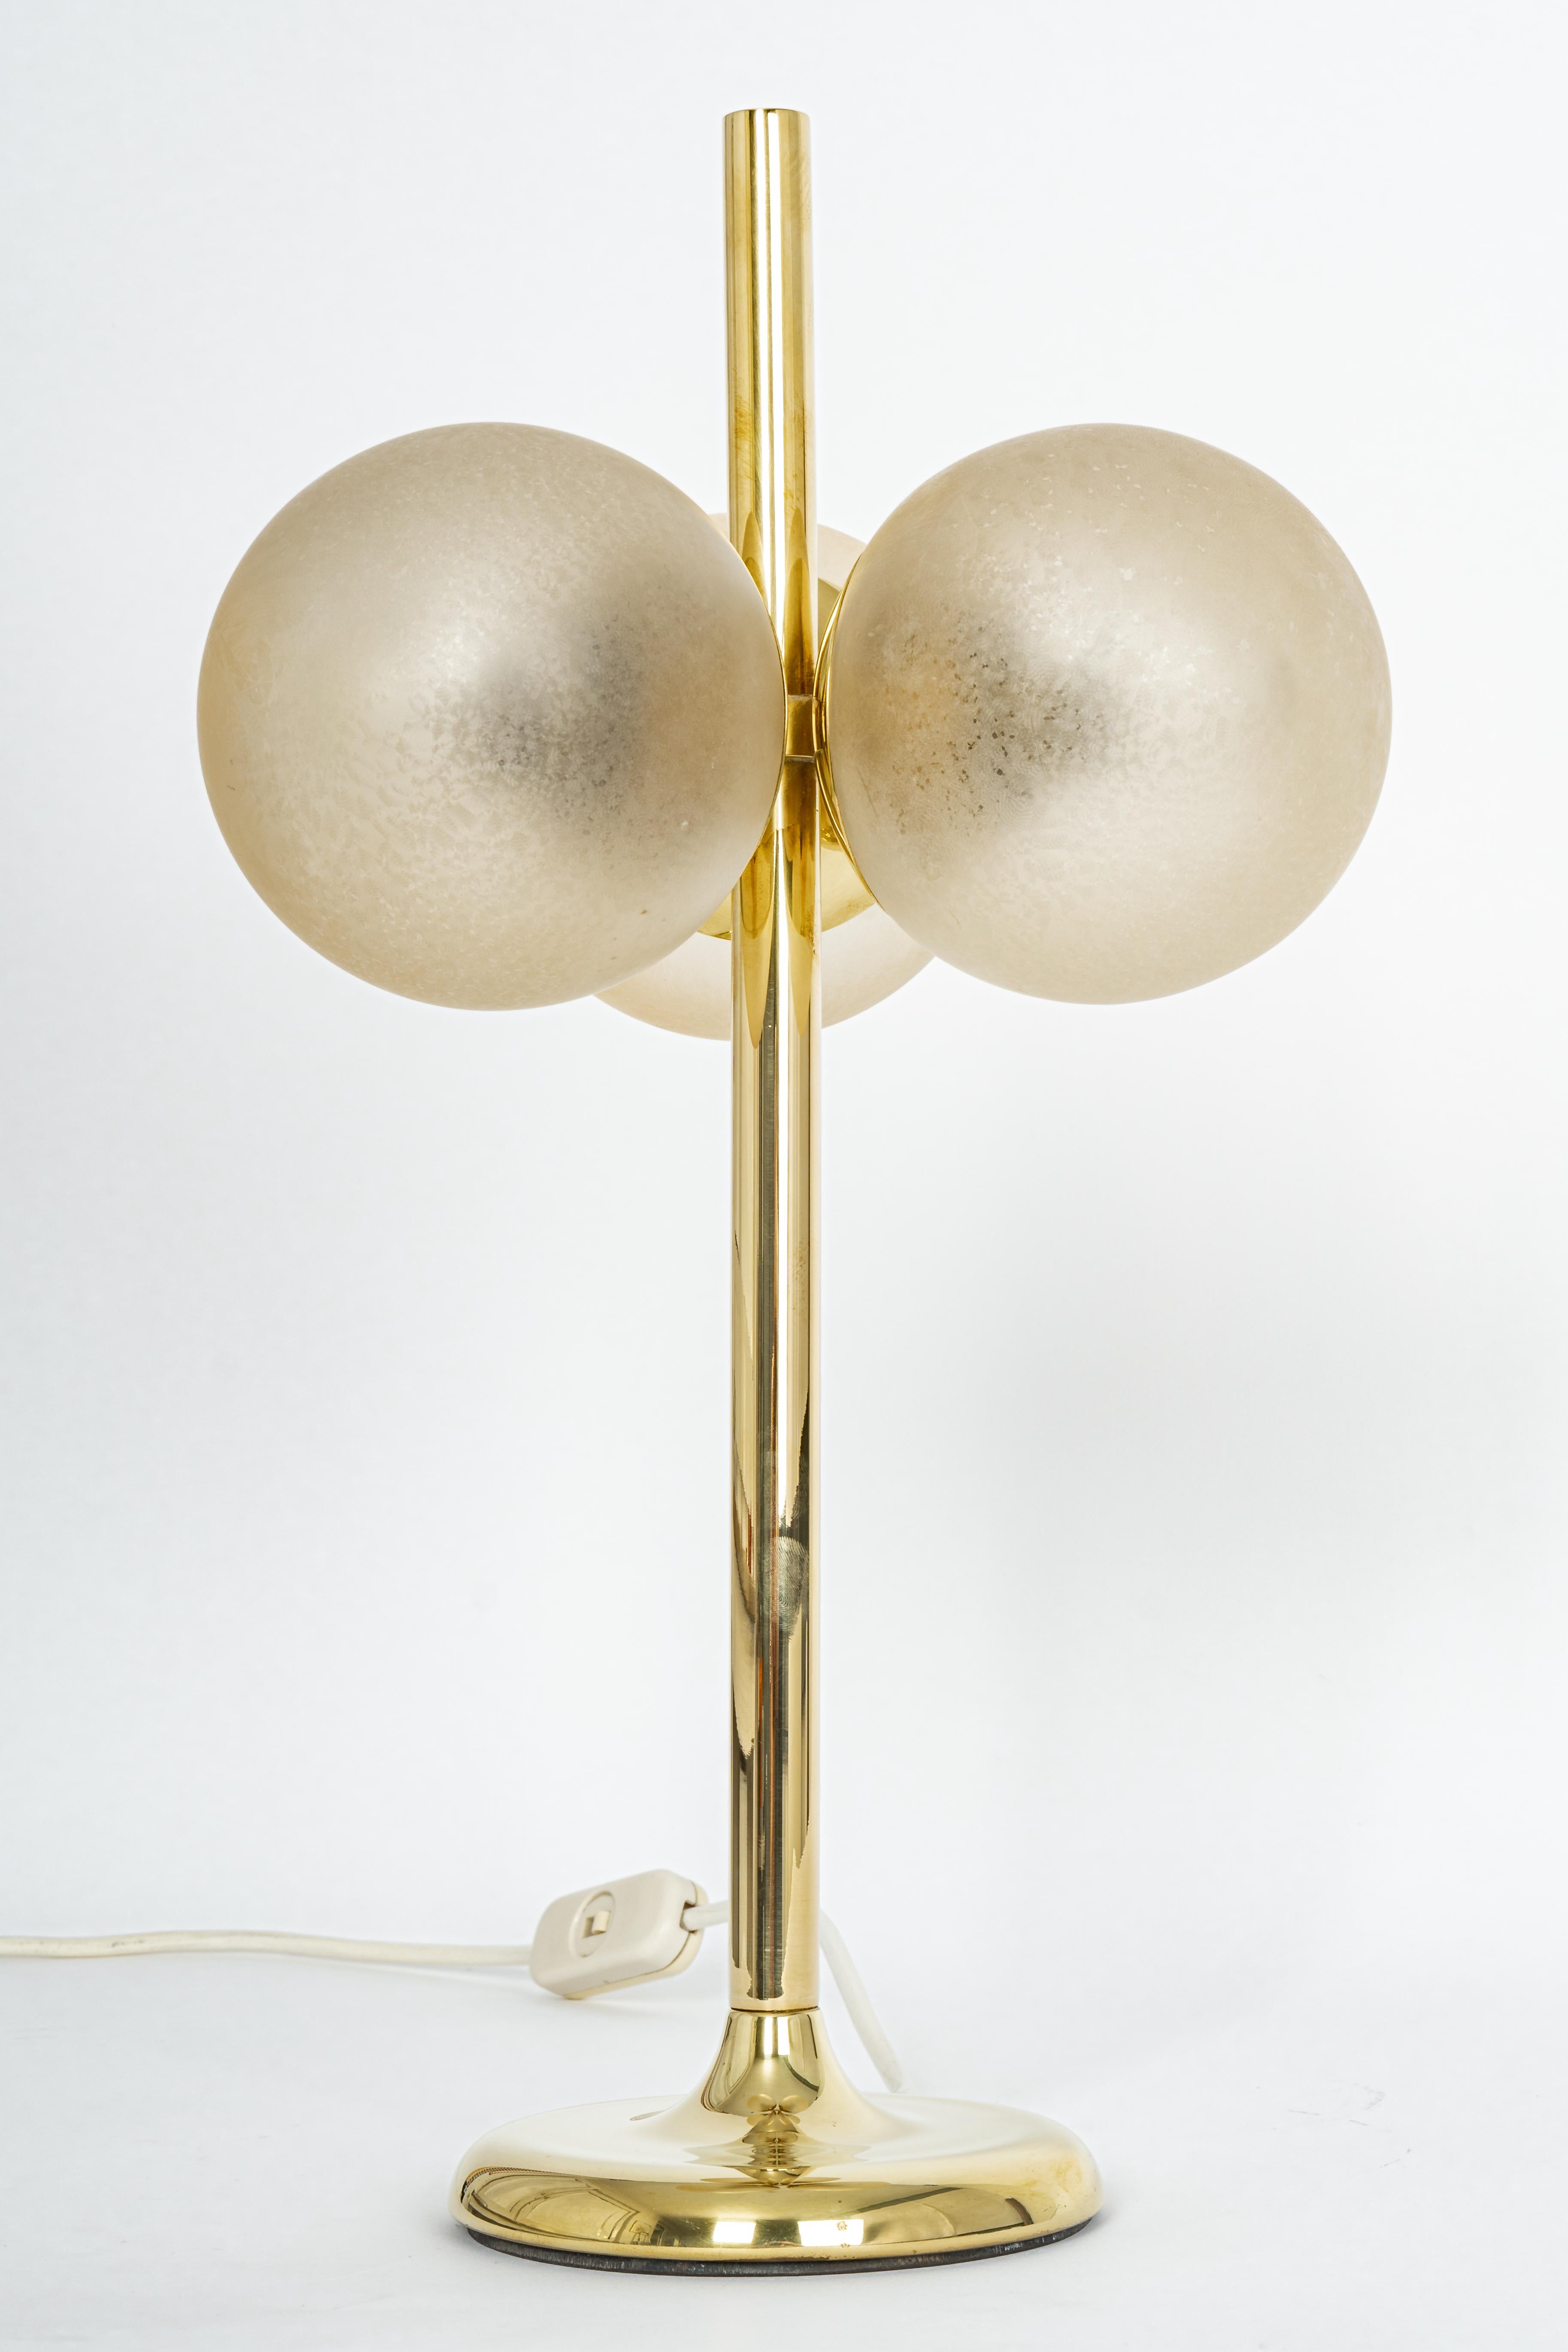 Wunderschönes Paar großer Messing-Tischlampen von Kaiser, Deutschland, 1970er Jahre
Es besteht aus drei hellbraunen Kunstgläsern auf einem Messingrahmen.

Hochwertig und in sehr gutem Zustand. Gereinigt, gut verkabelt und einsatzbereit. 

Jede